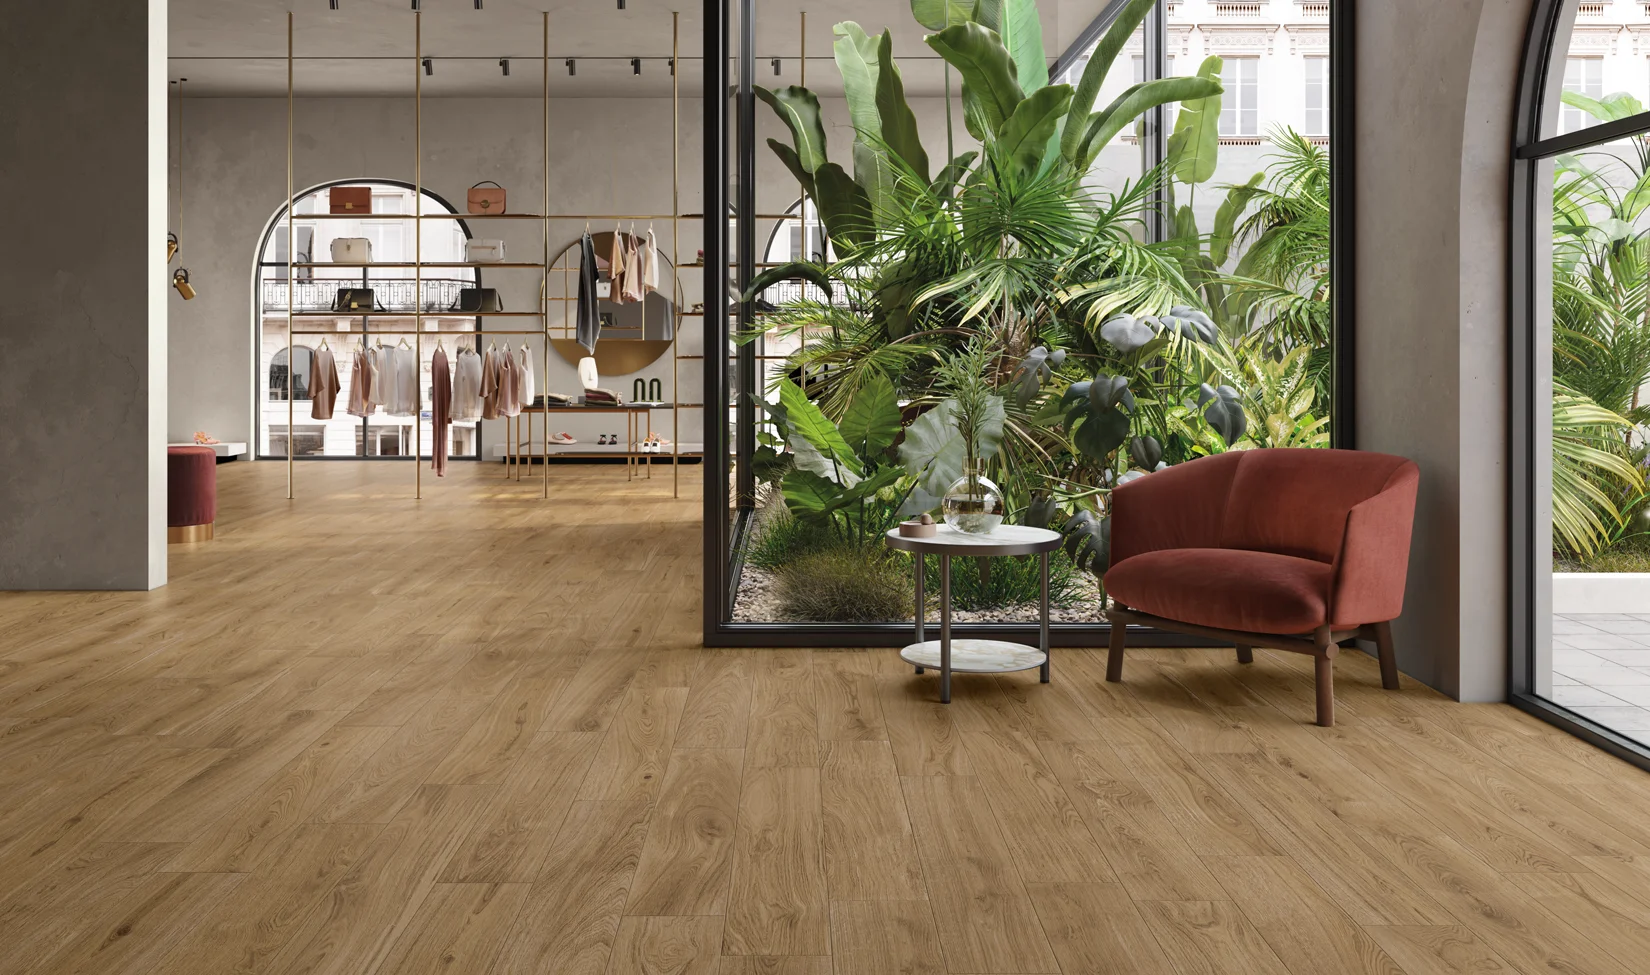 Negozio moderno con pavimento in gres porcellanato effetto legno e interni eleganti.